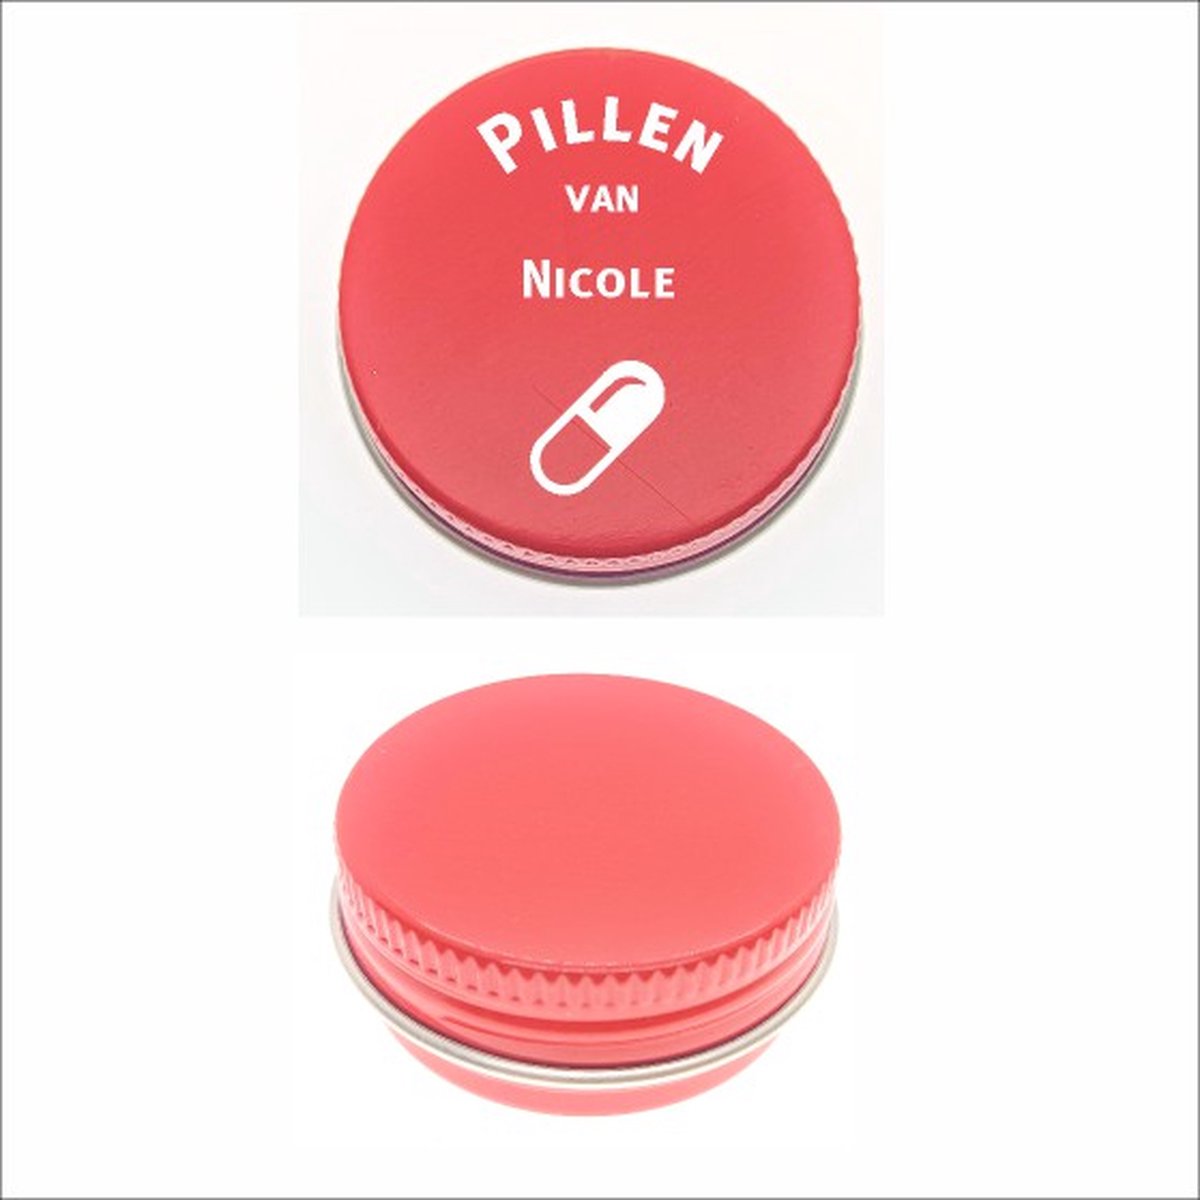 Pillen Blikje Met Naam Gravering - Nicole